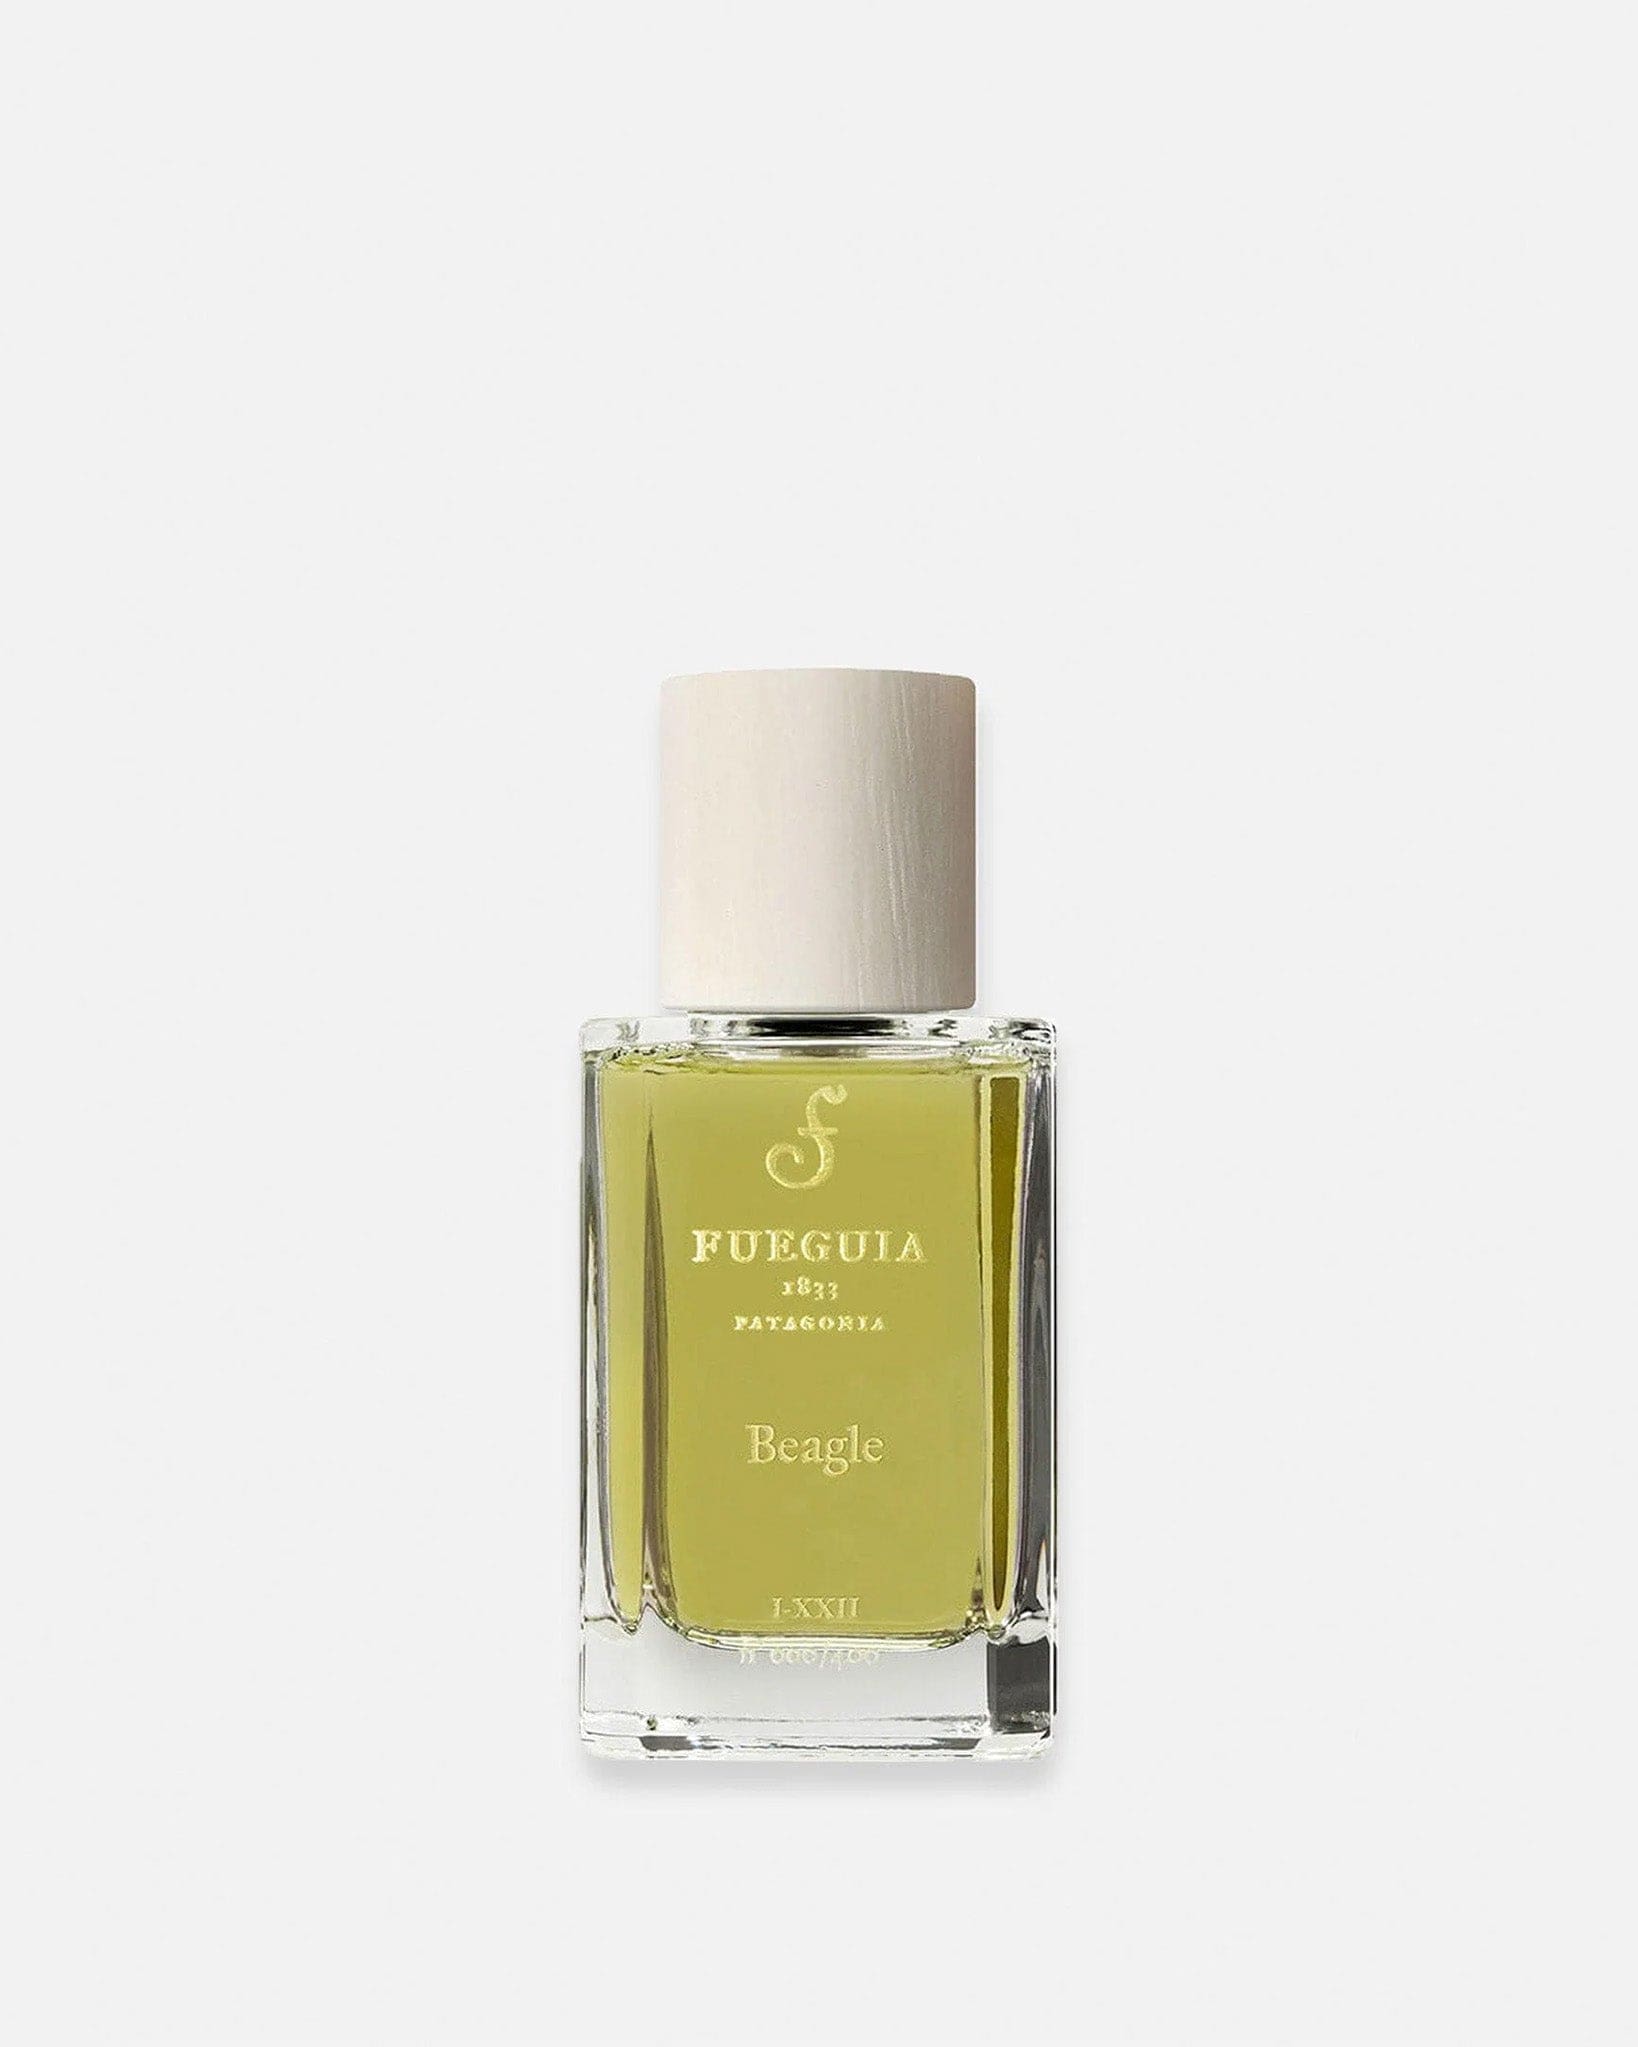 フエギア FUEGUIA 1833 Beagle ビーグル 30ml - 香水